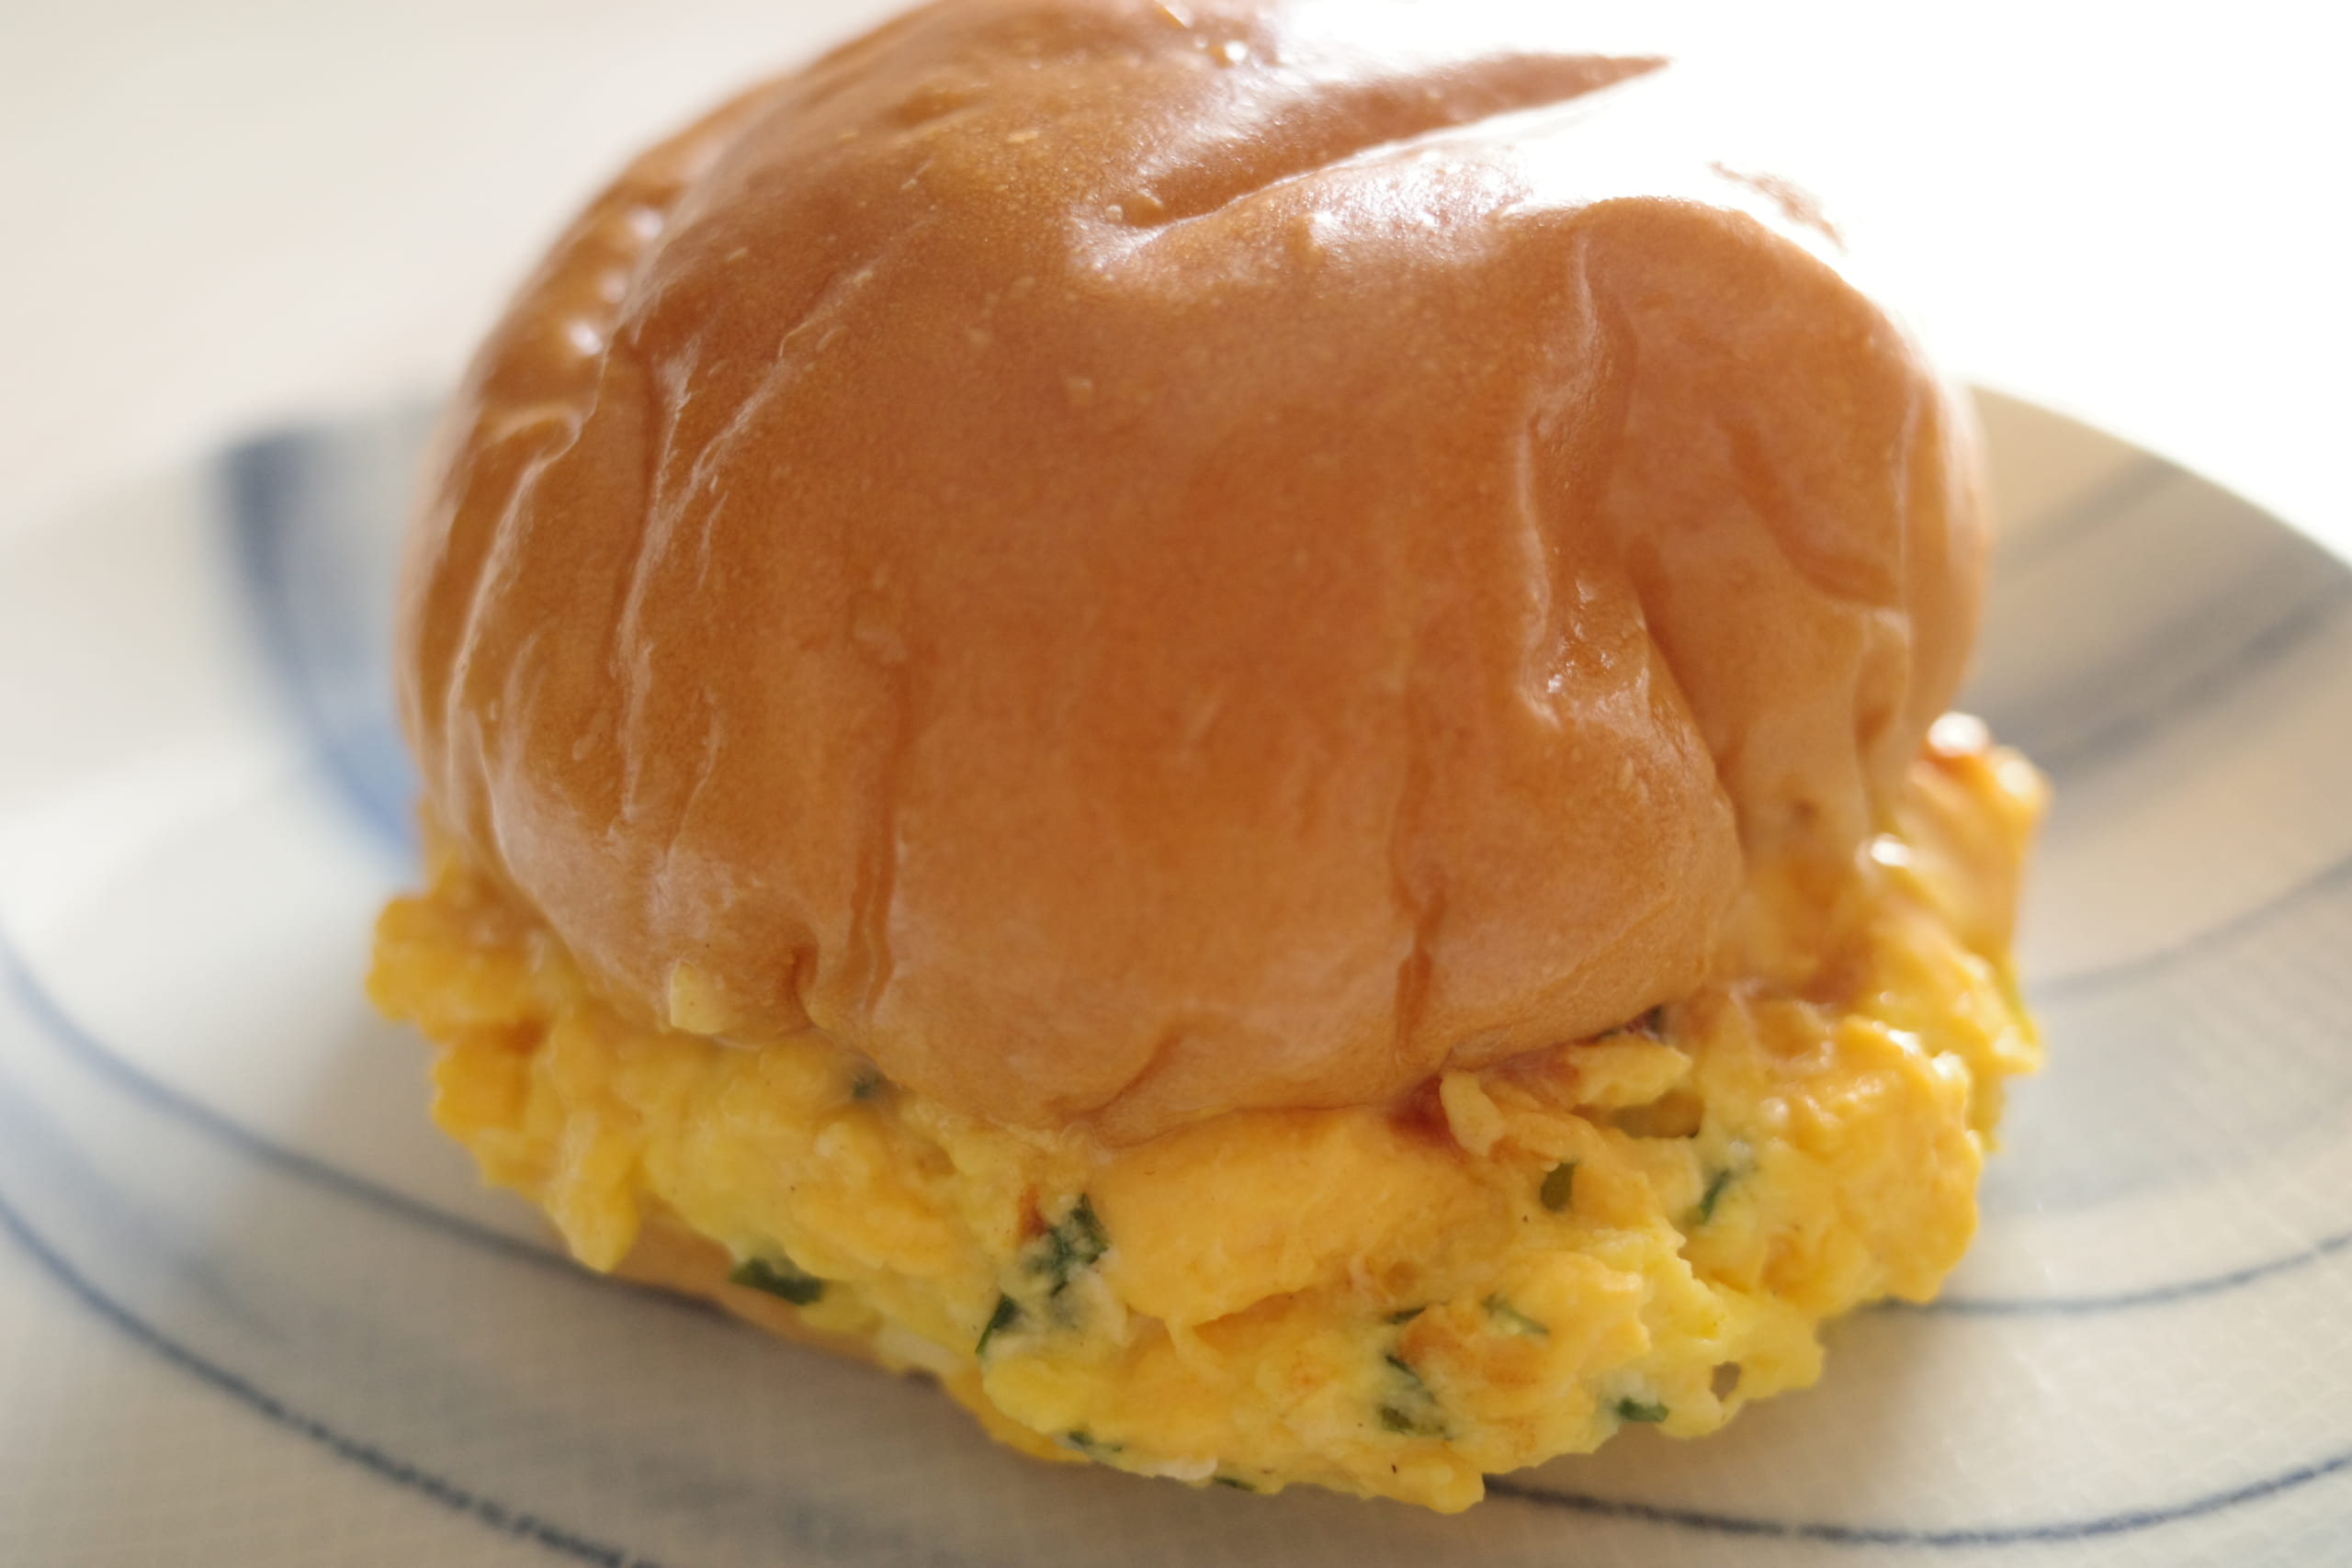 【ローソン新商品ルポ】とろとろふわっふわの新食感サンドイッチ「とろとろTAMAGOバーガー(デミグラス)」